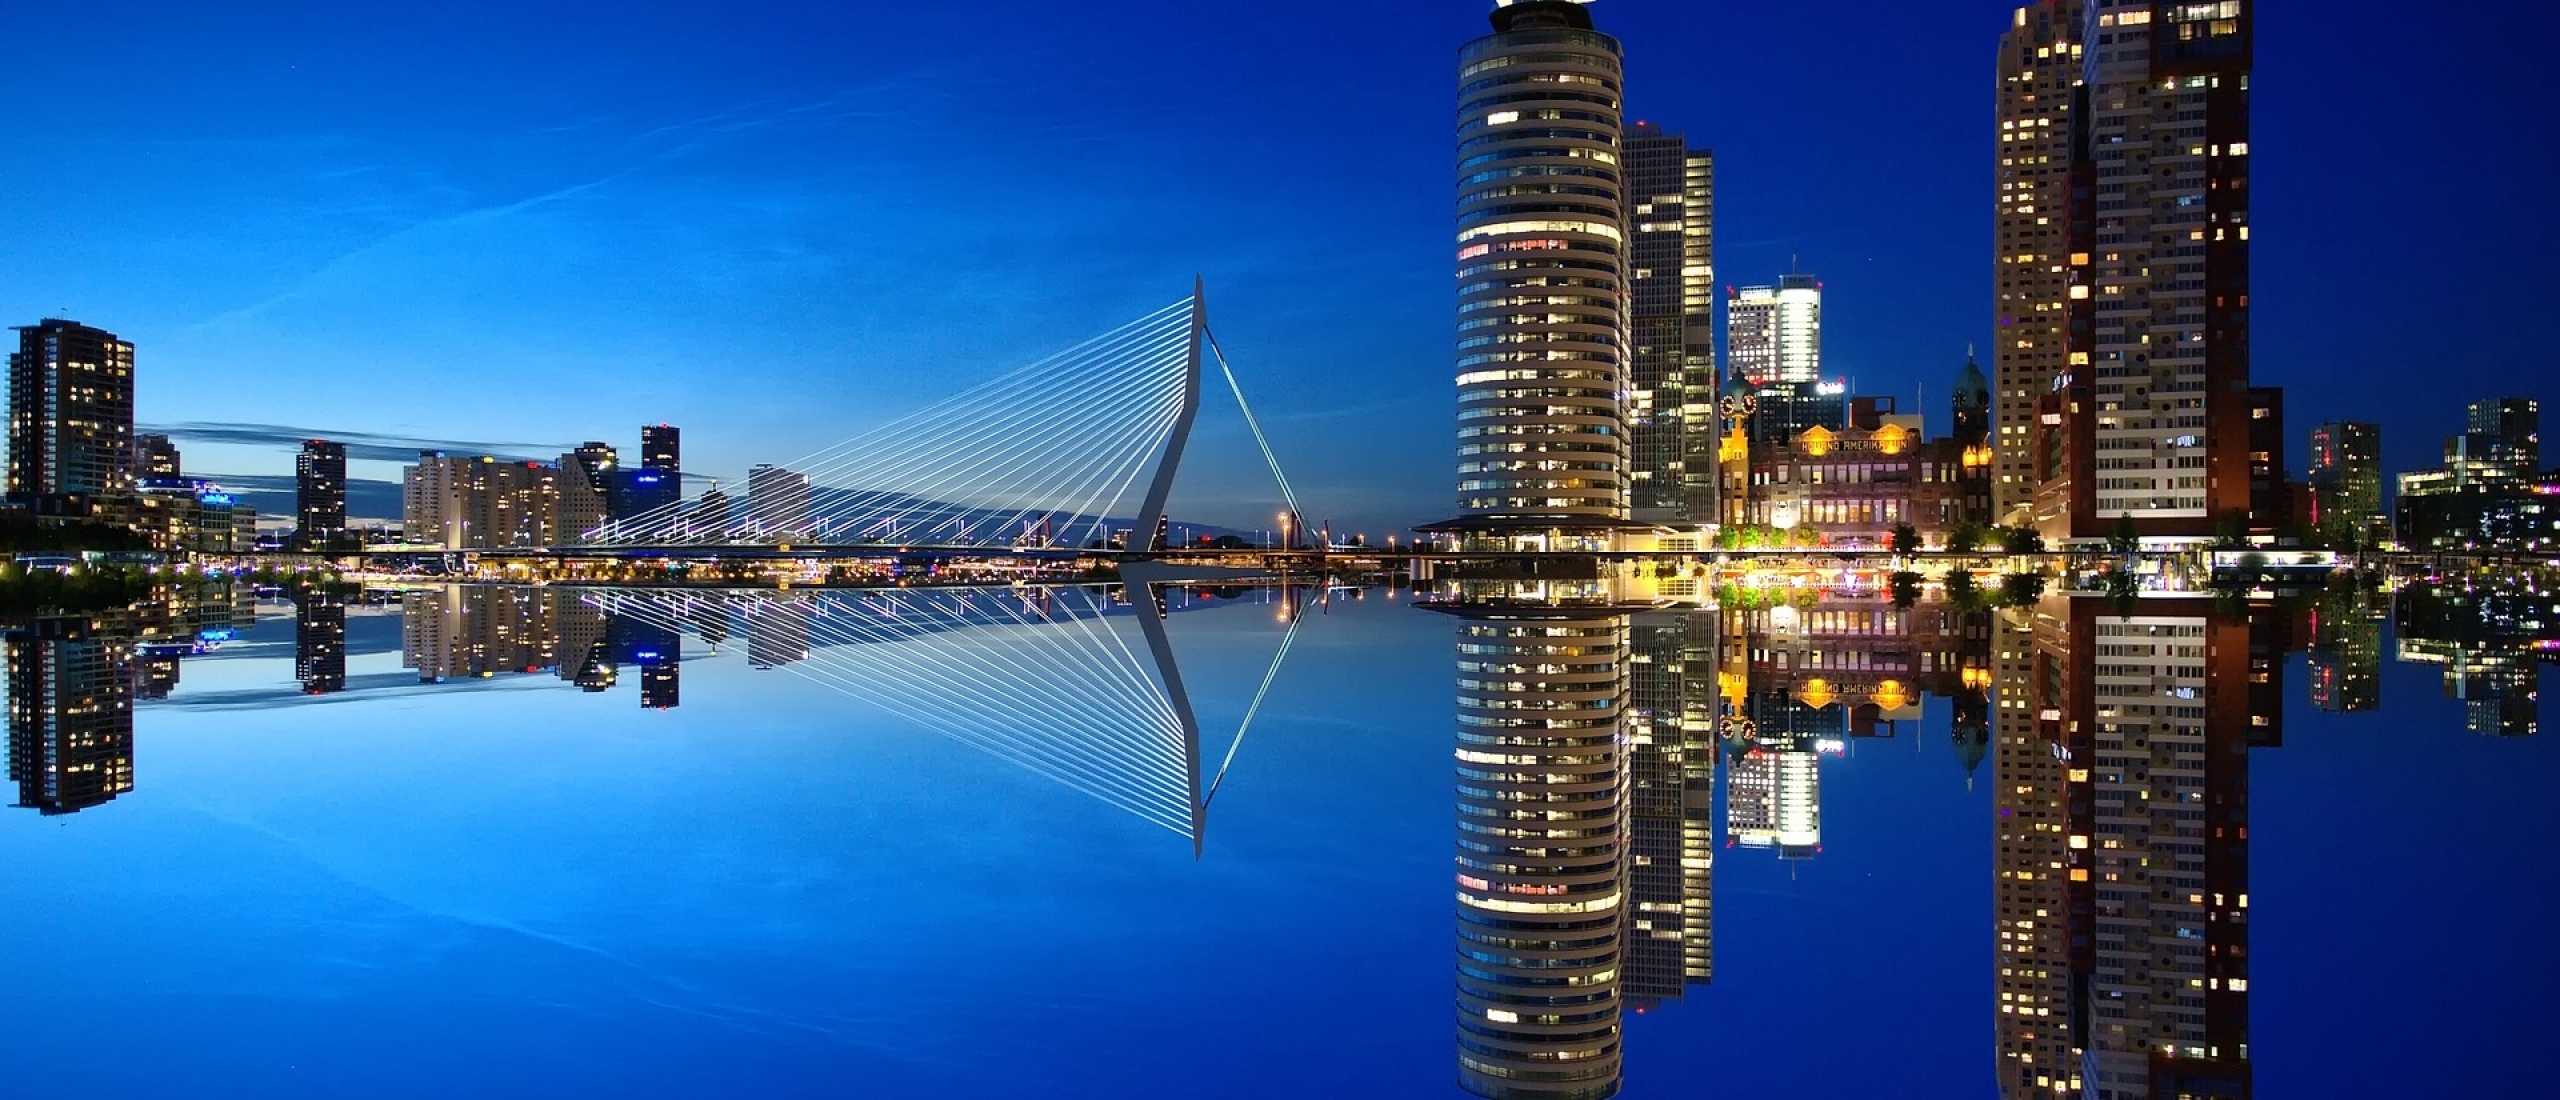 Meubel en interieurspuiterij Rotterdam